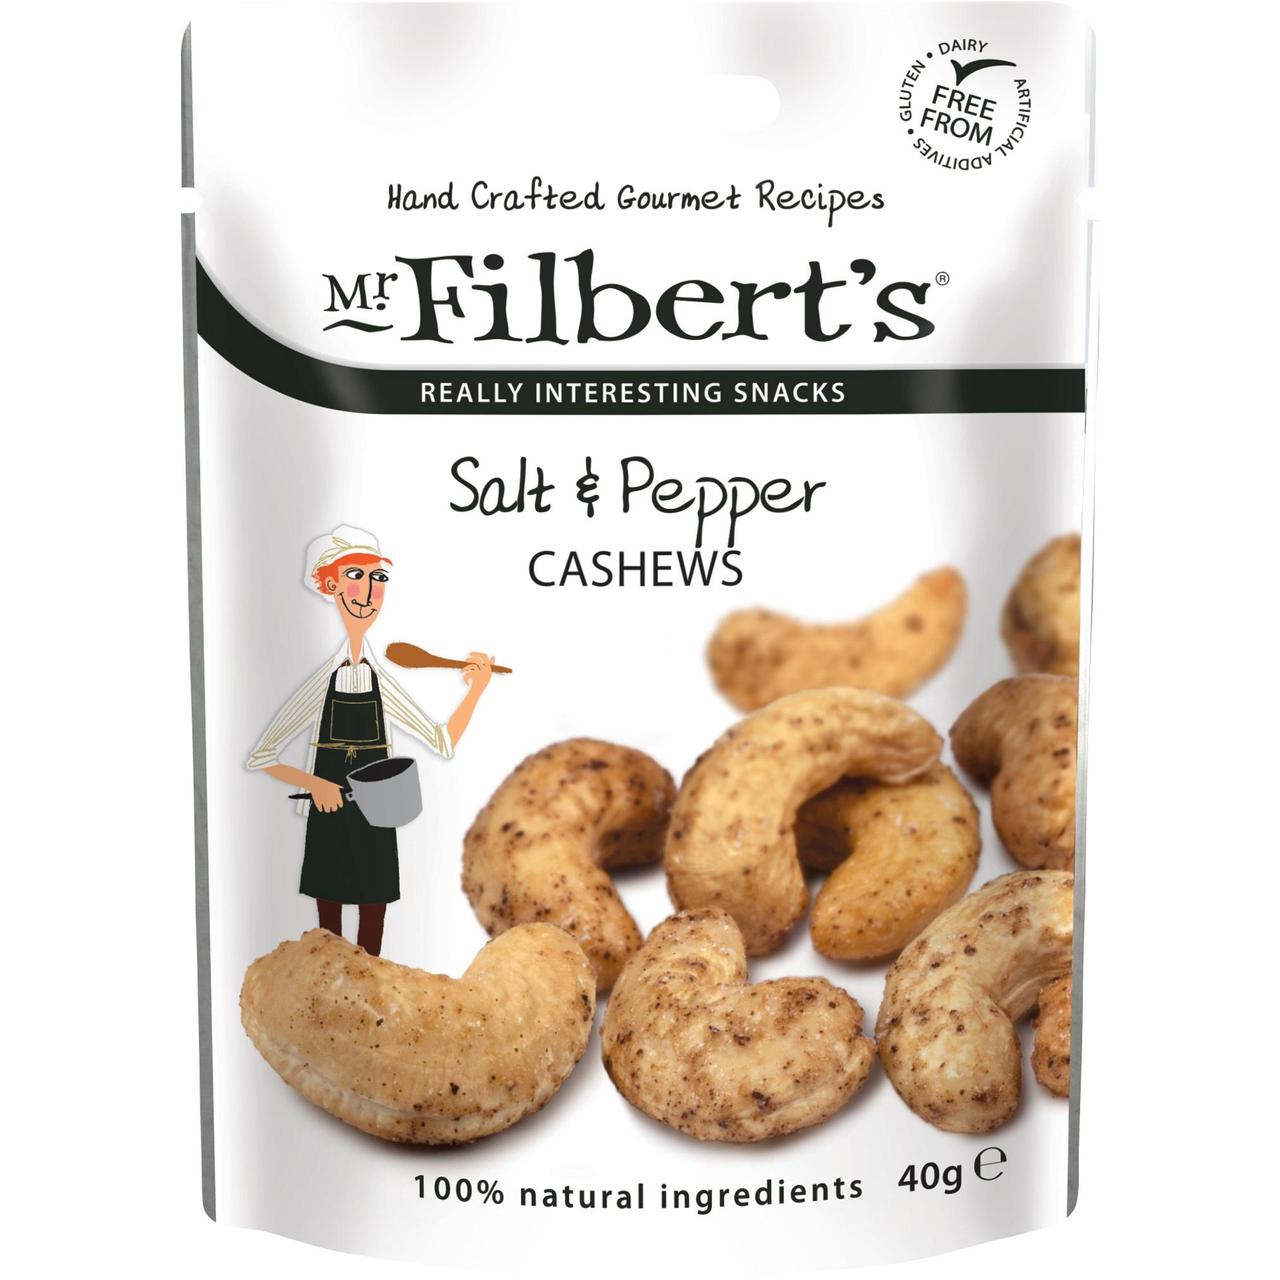 Mr Filbert's Salt & Pepper Cashews